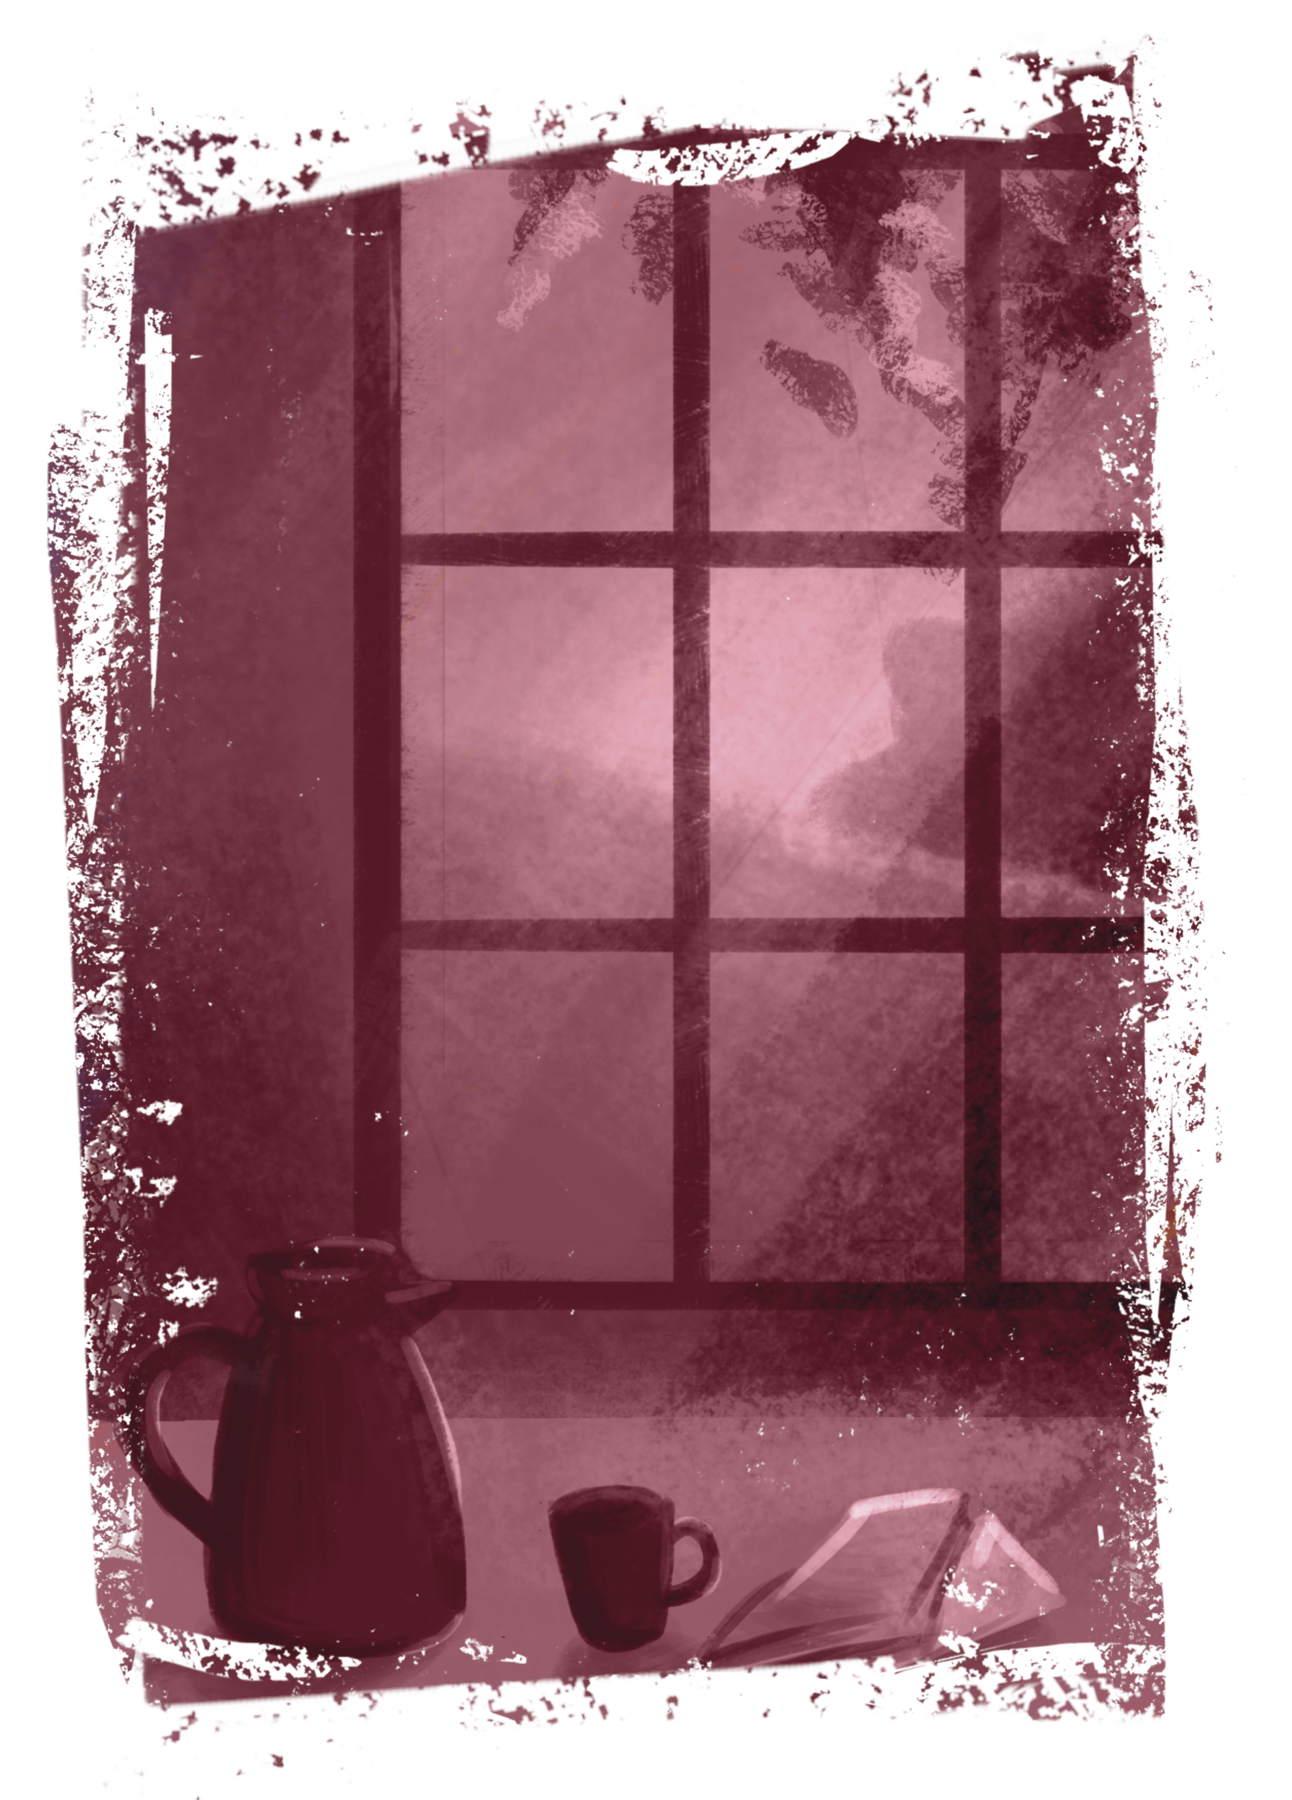 Ilustração em tons de sépia. Vista do interior de um ambiente. Centralizada, uma mesa com um garrafa térmica, uma xícara e alguns livros sobre ela. Ao fundo, uma janela envidraçada. Do lado de fora, ramos de uma árvore e paisagem natural montanhosa iluminada pelo sol.